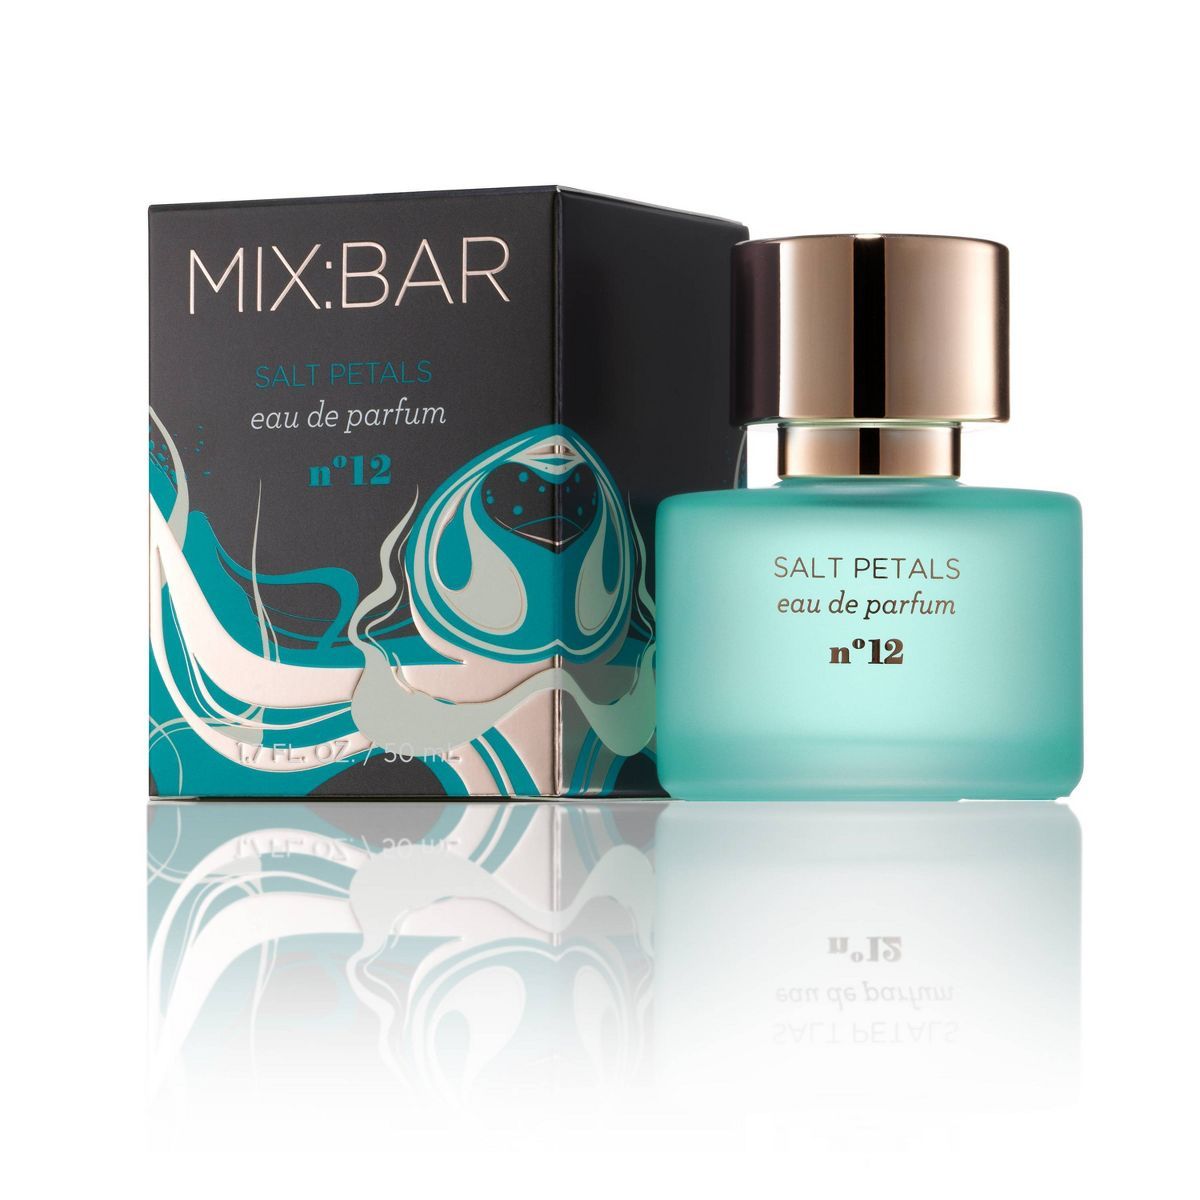 MIX:BAR Eau de Parfum Perfume - Salt Petals - 1.7 fl oz | Target